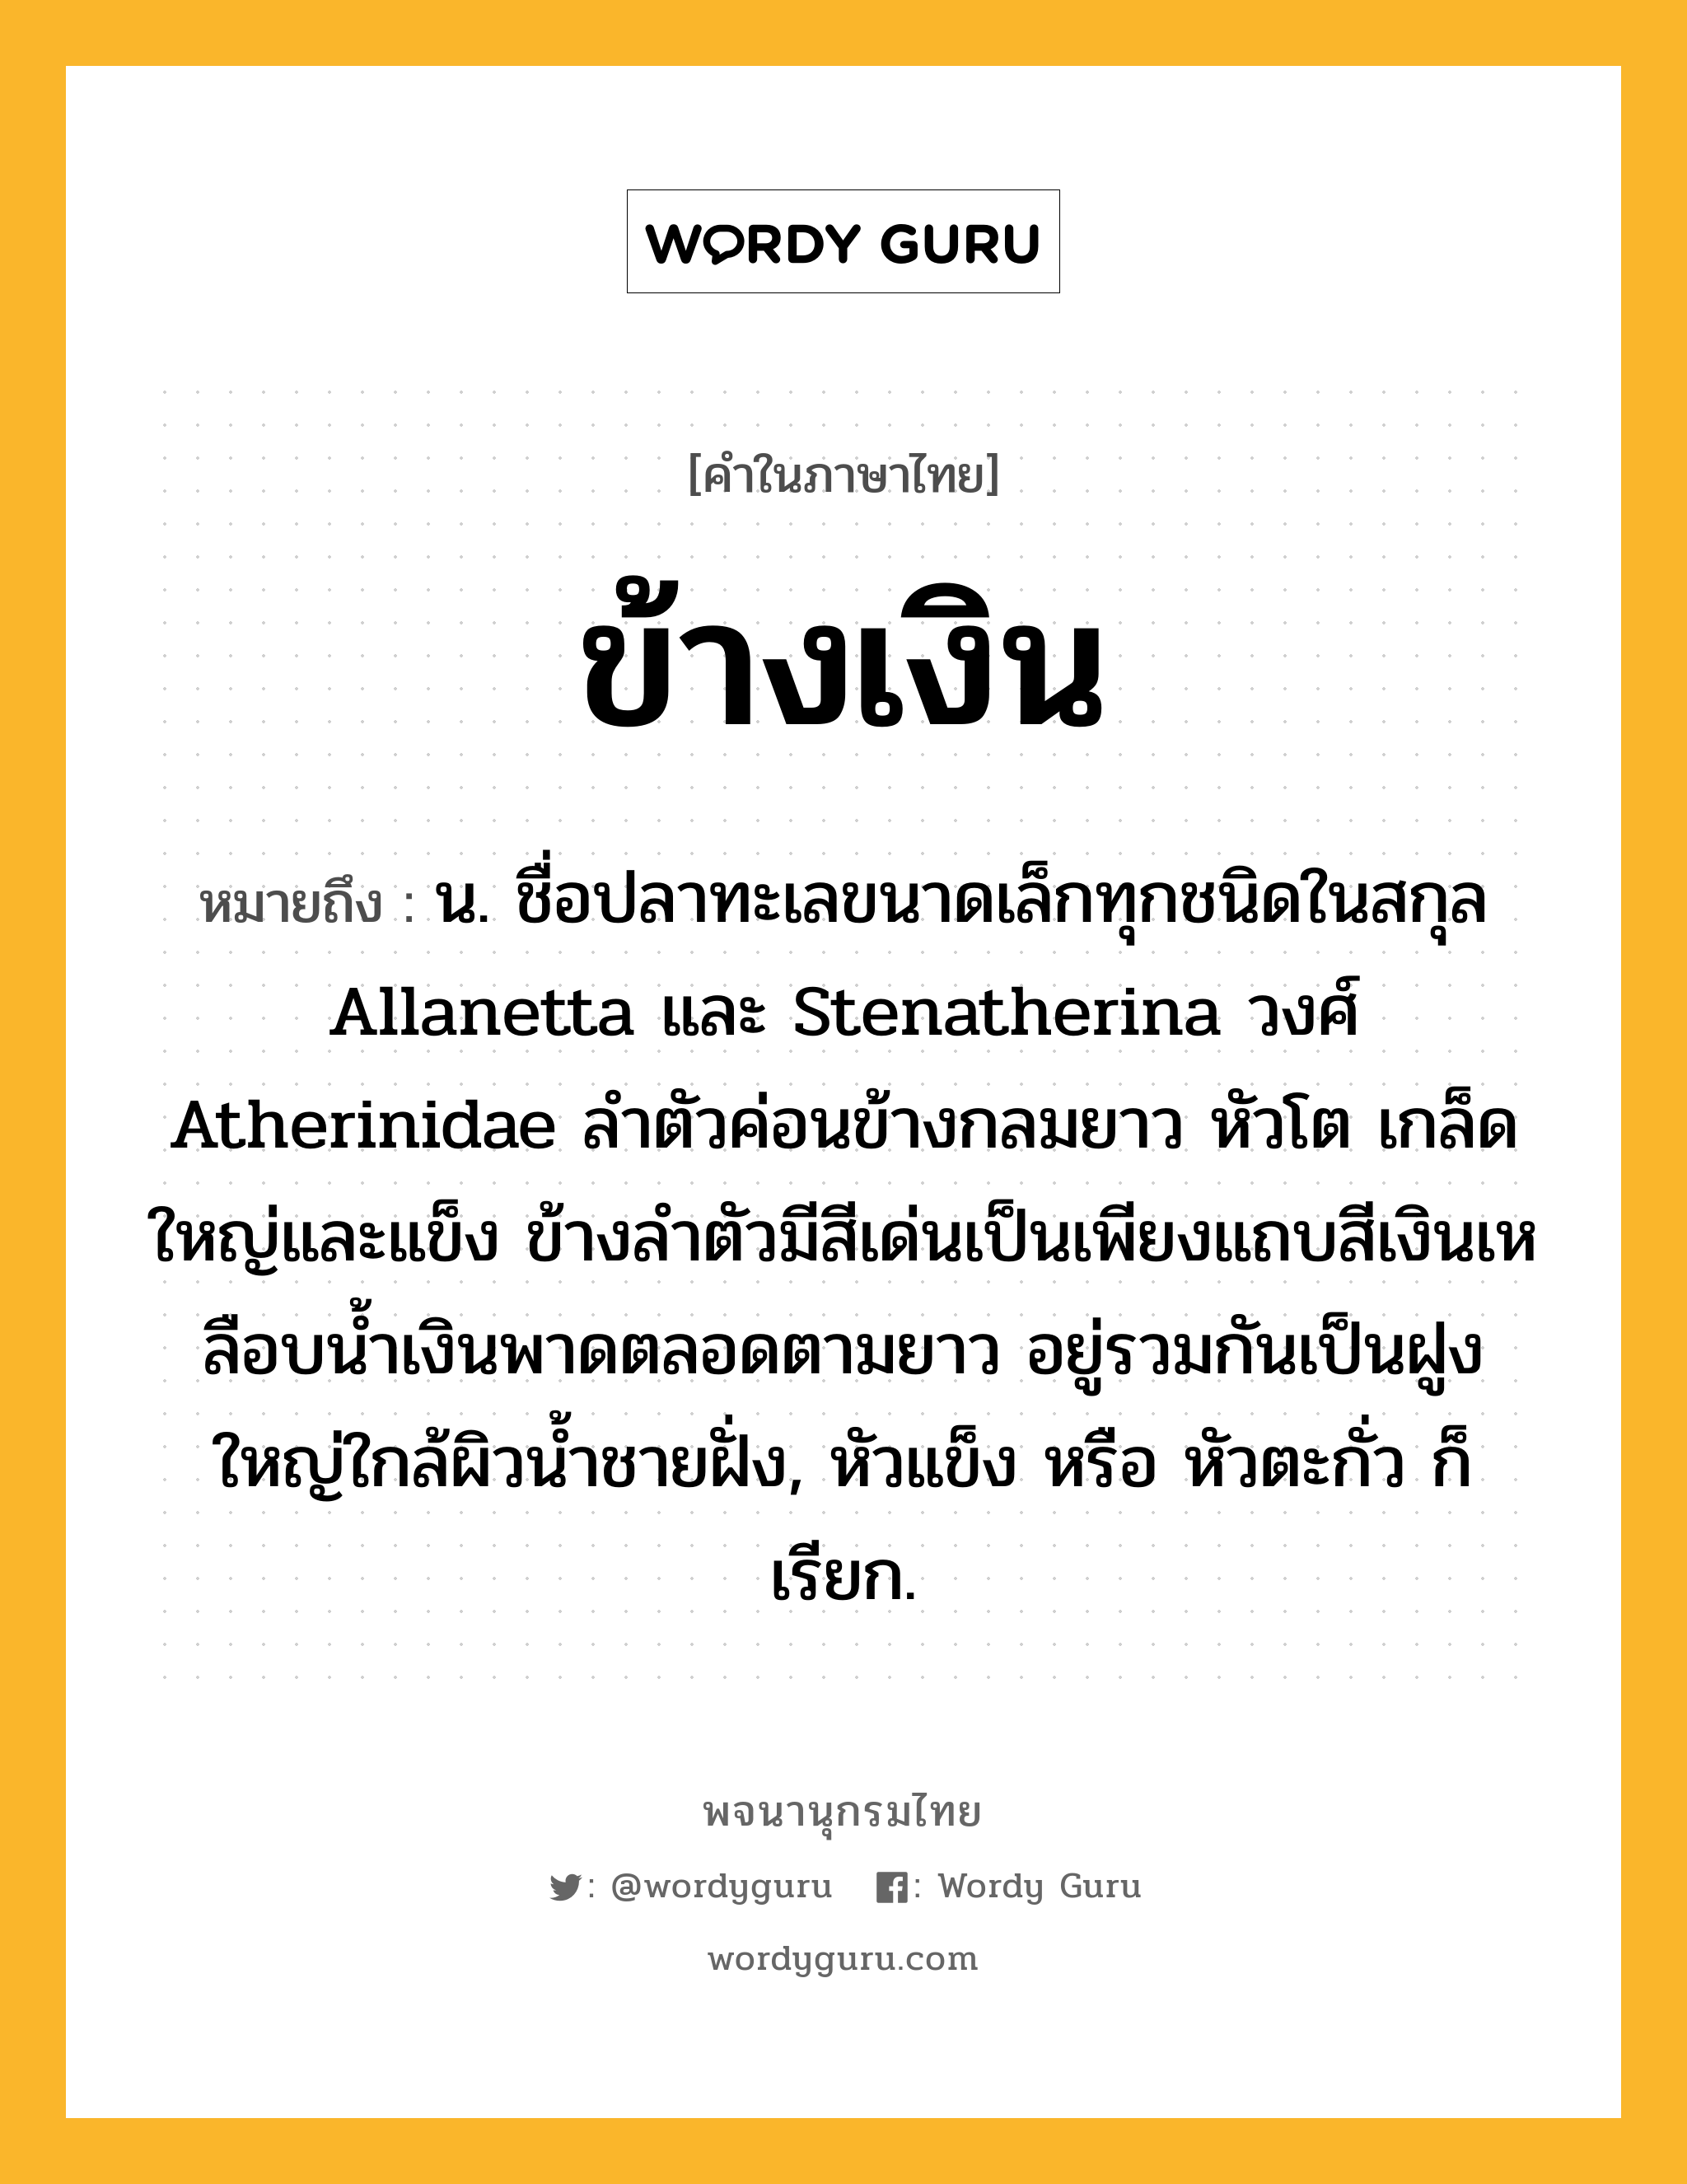 ข้างเงิน ความหมาย หมายถึงอะไร?, คำในภาษาไทย ข้างเงิน หมายถึง น. ชื่อปลาทะเลขนาดเล็กทุกชนิดในสกุล Allanetta และ Stenatherina วงศ์ Atherinidae ลําตัวค่อนข้างกลมยาว หัวโต เกล็ดใหญ่และแข็ง ข้างลําตัวมีสีเด่นเป็นเพียงแถบสีเงินเหลือบนํ้าเงินพาดตลอดตามยาว อยู่รวมกันเป็นฝูงใหญ่ใกล้ผิวนํ้าชายฝั่ง, หัวแข็ง หรือ หัวตะกั่ว ก็เรียก.